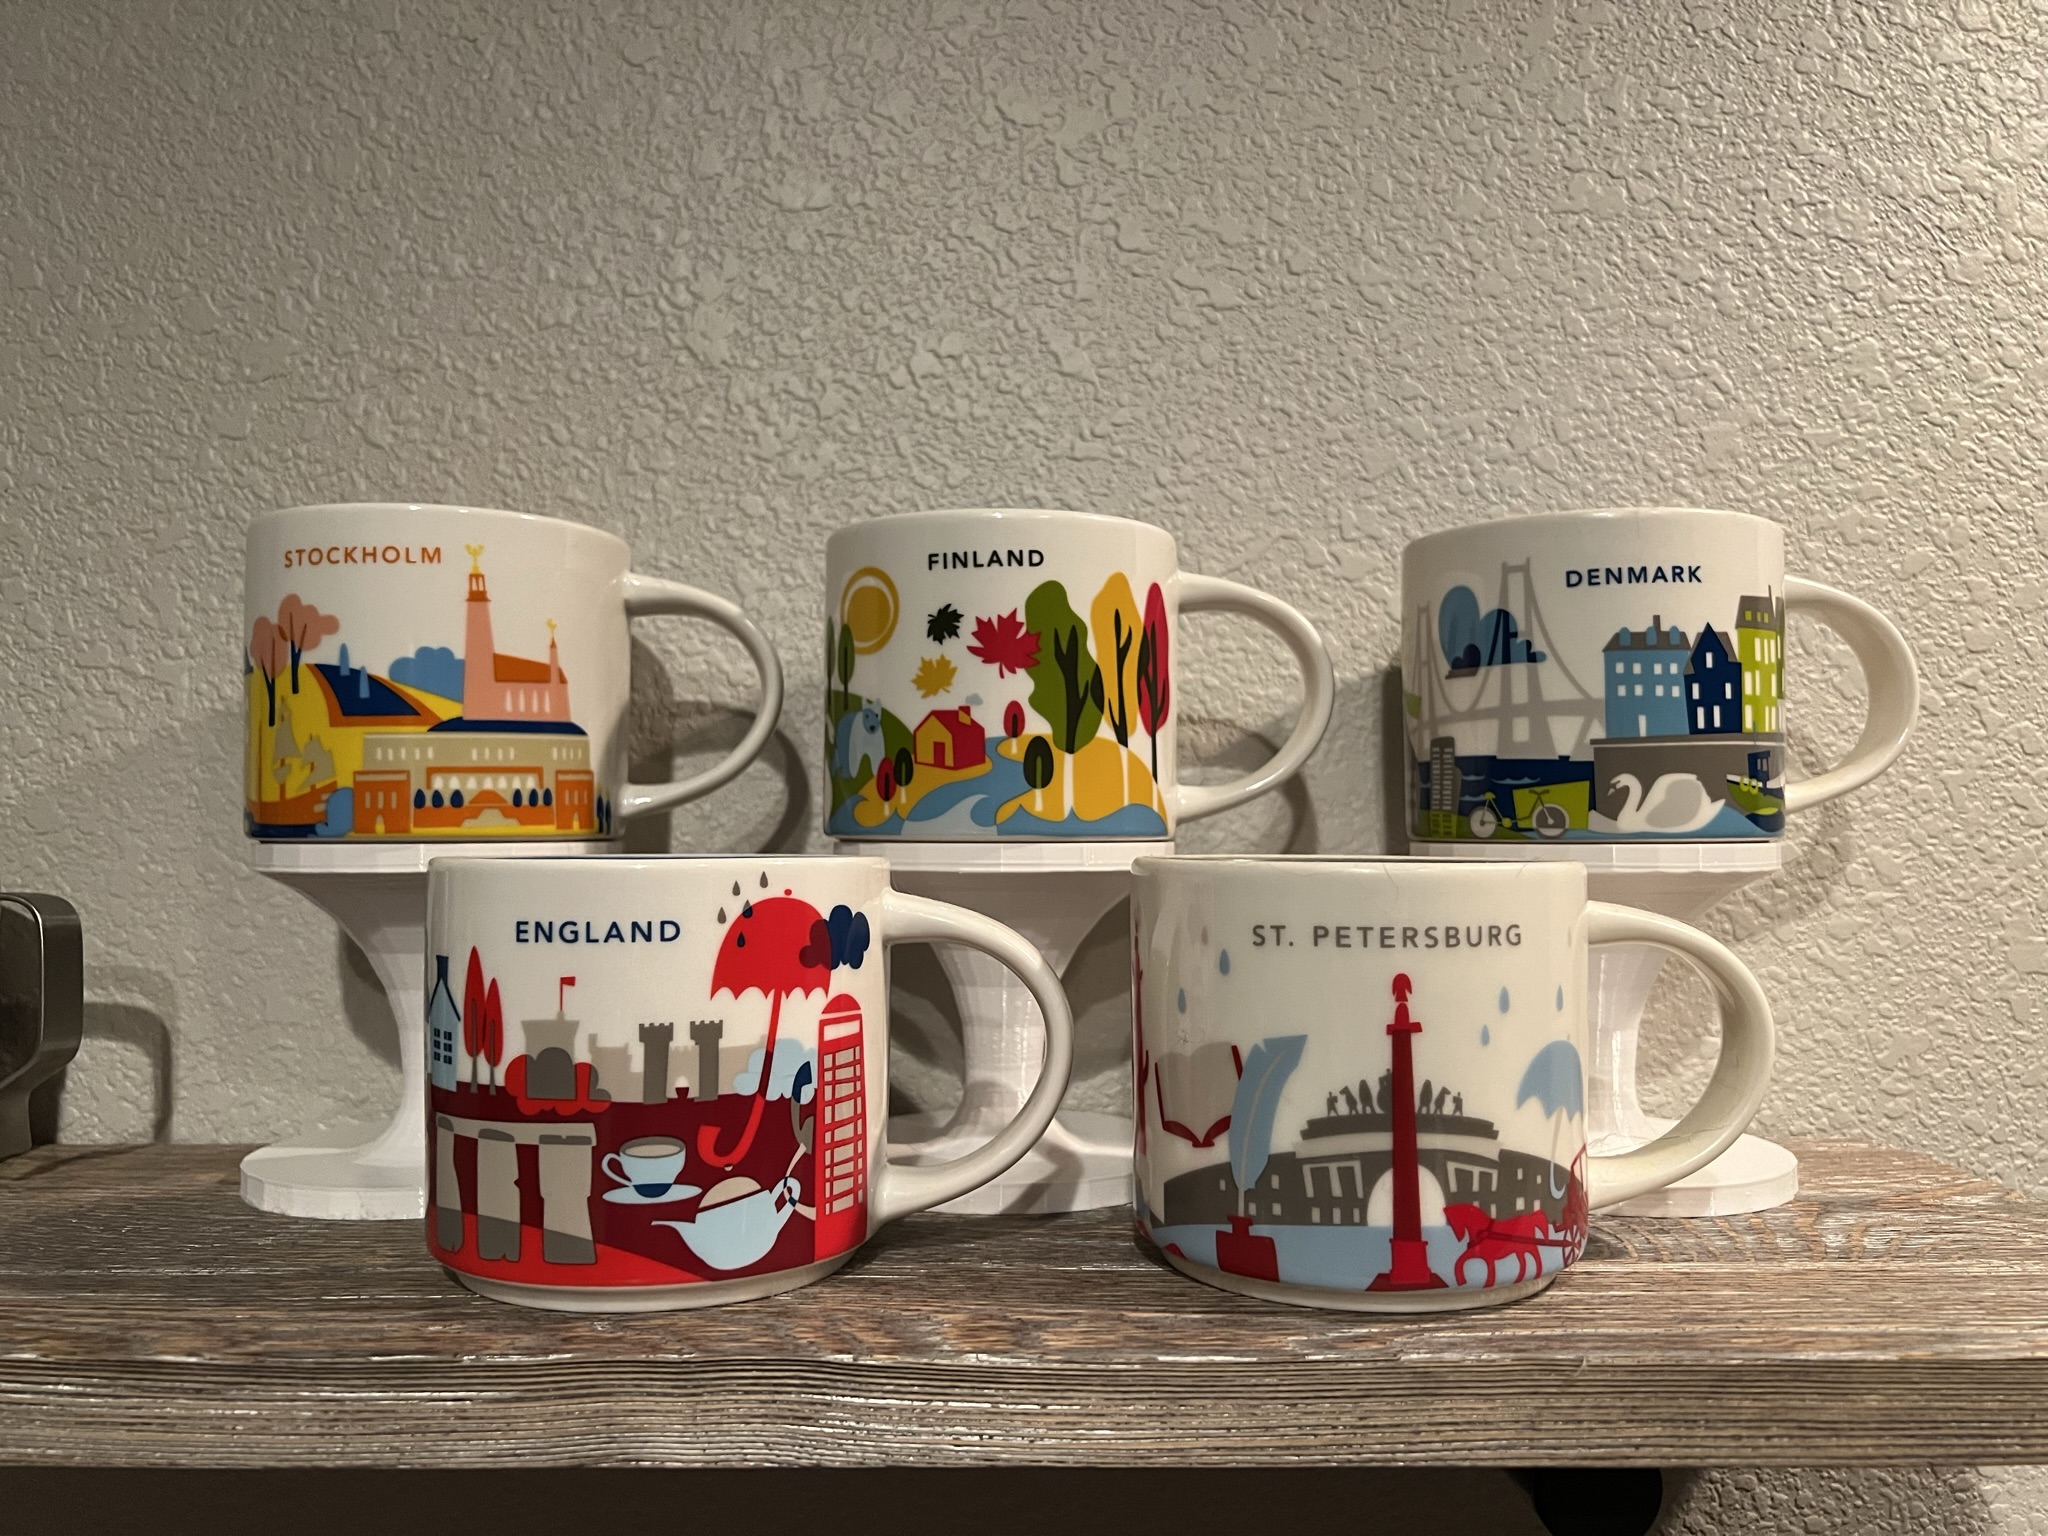 Mug Holder / Stand / Shelf for displaying Starbucks or other mugs